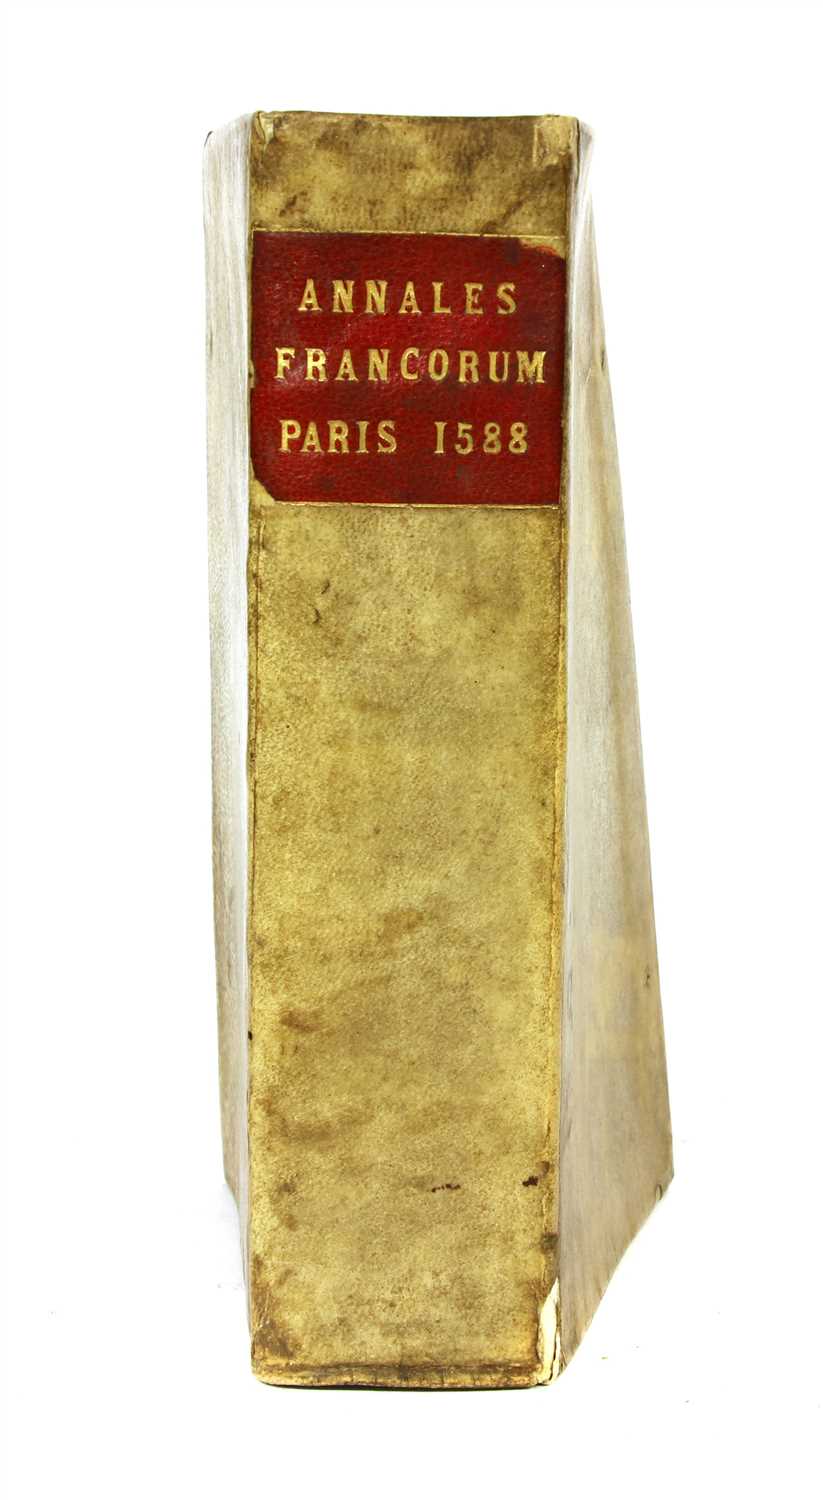 Lot 228 - Early Printing: Annalium et Historiae Francorum.